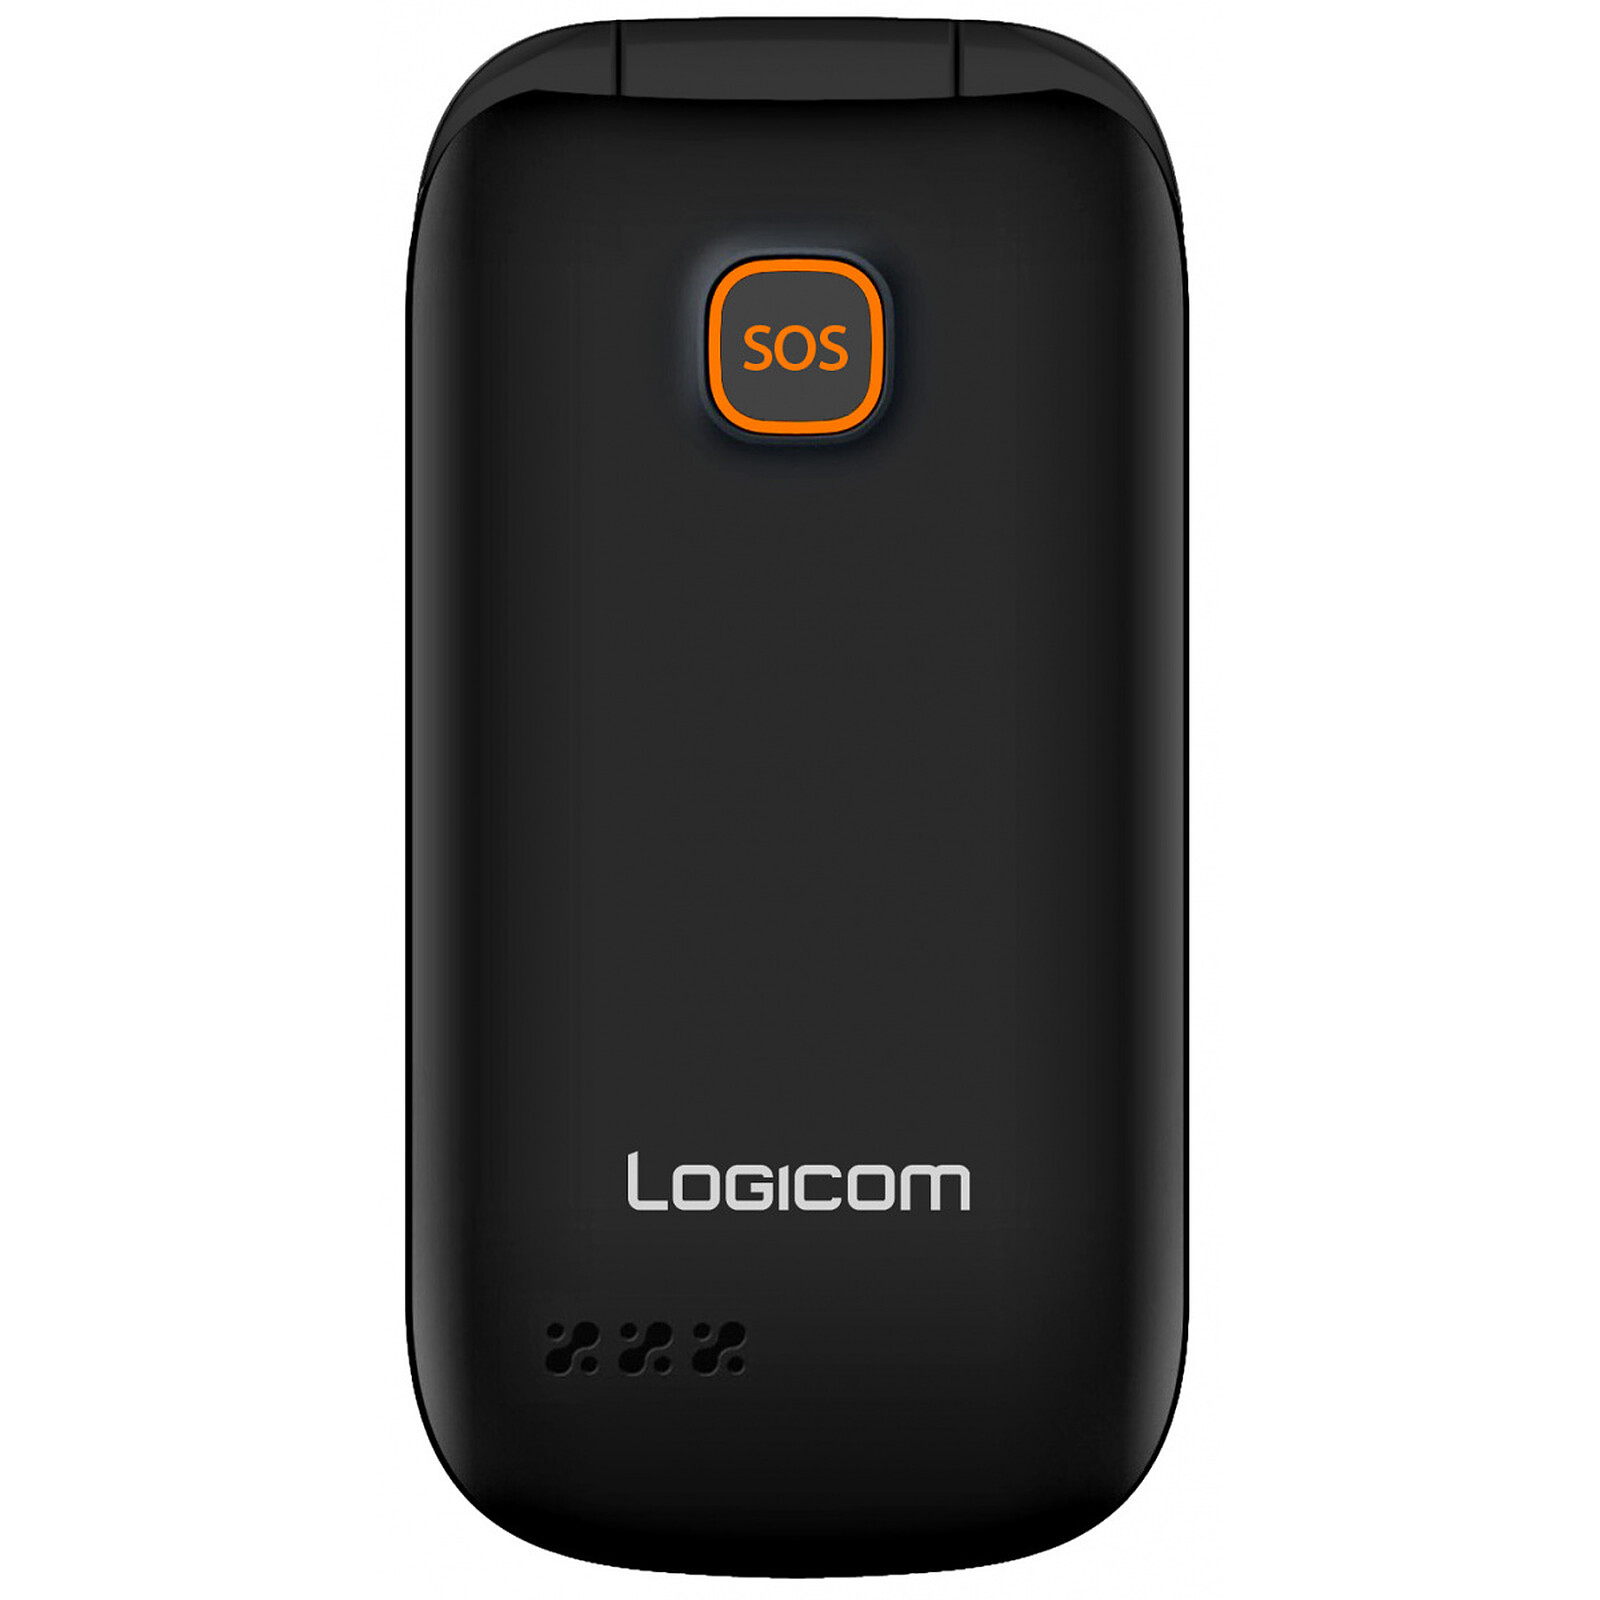 Logicom Le Posh 180 Noir - Mobile & smartphone - Garantie 3 ans LDLC